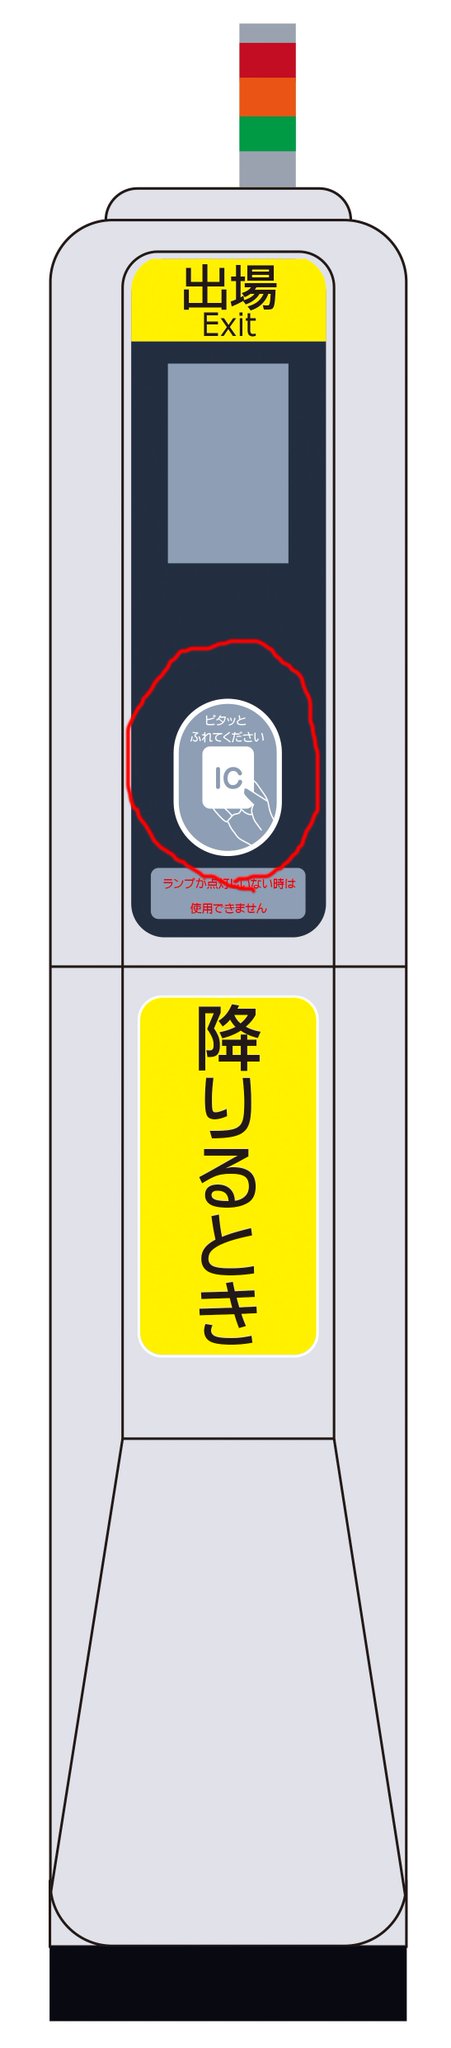 叡山電車 公式 V Twitter 叡山電車のｉｃが導入されるとどこへｉｃカードをタッチするの ってことで 中の人がイラスト を描いてみました 降車用の簡易改札機が設置駅のみとなりますが 係員配置とき 駅での降車用の簡易改札機 赤で囲んだ部分がｉｃ読み取り部